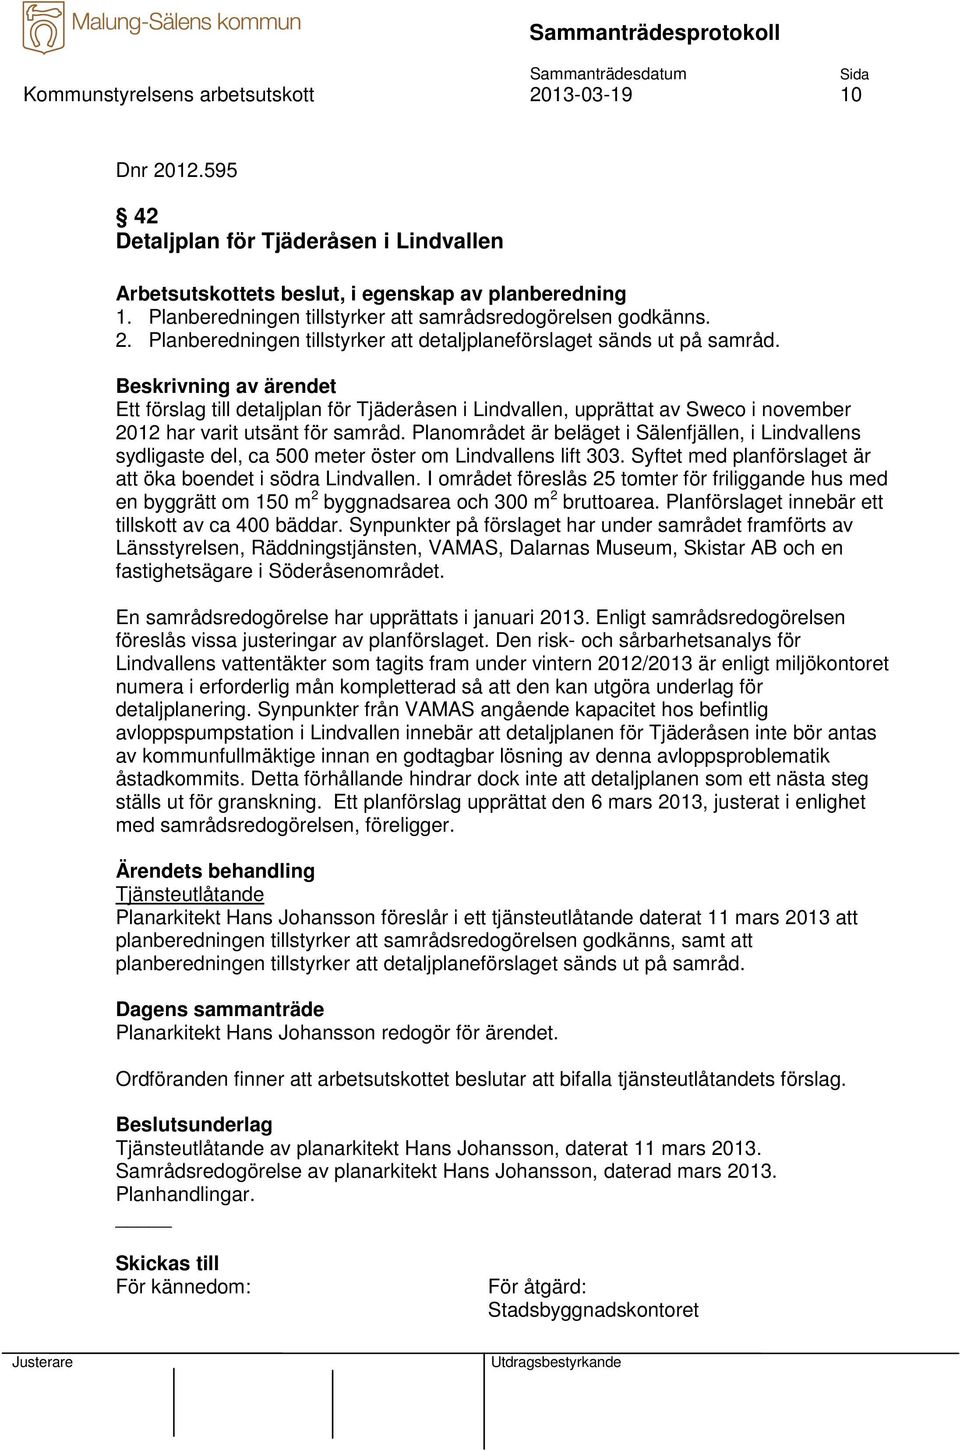 Ett förslag till detaljplan för Tjäderåsen i Lindvallen, upprättat av Sweco i november 2012 har varit utsänt för samråd.